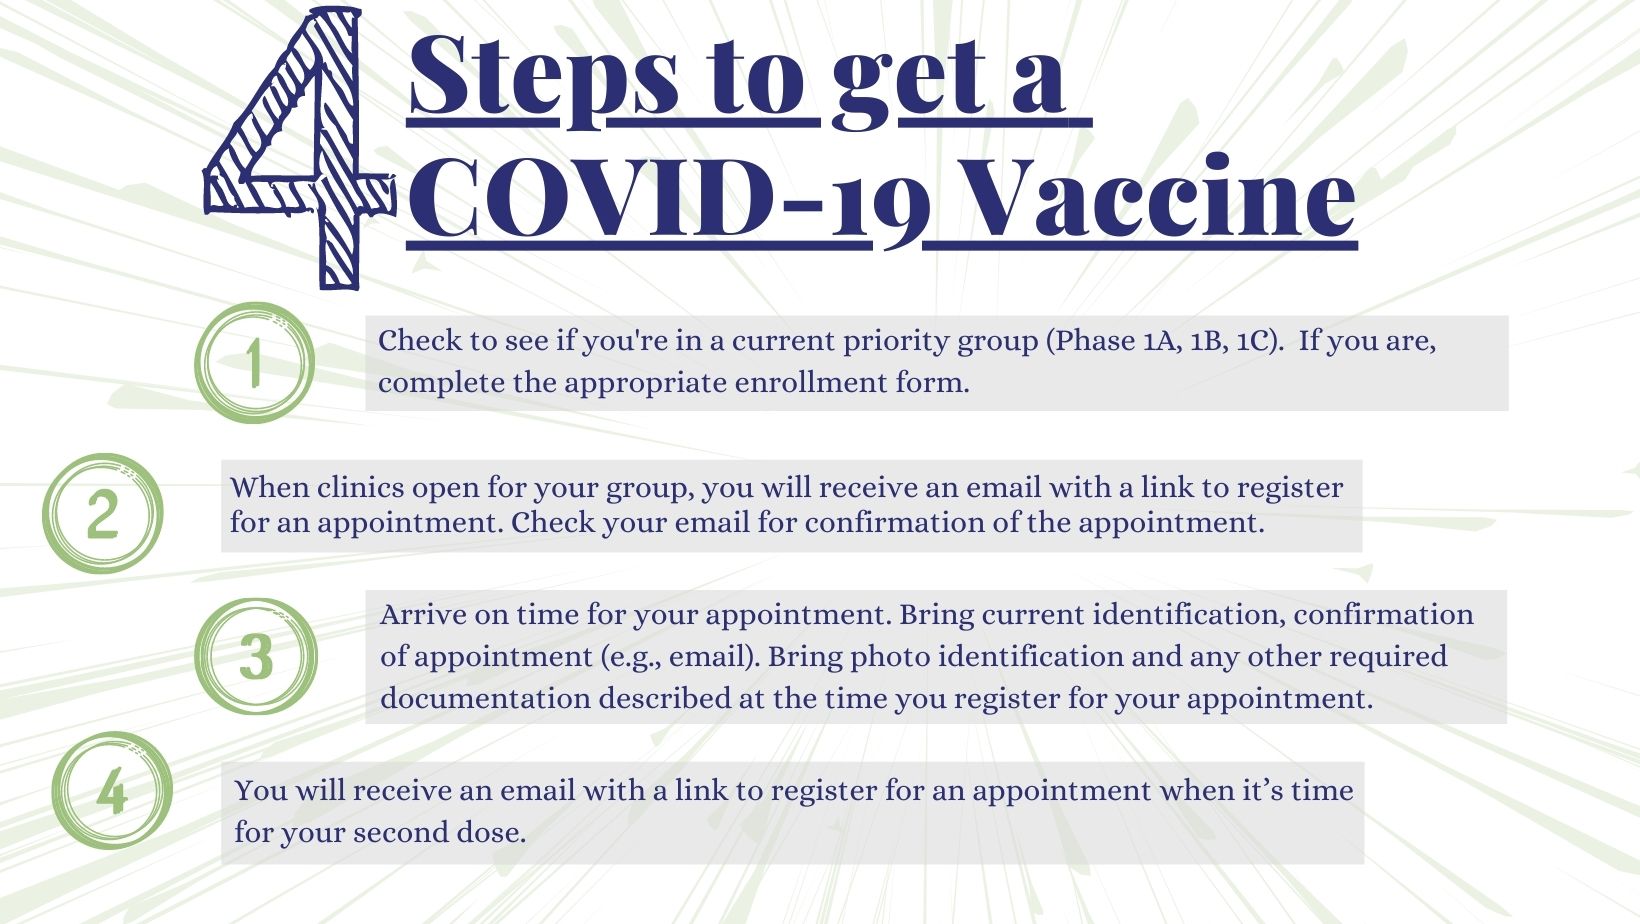 COVID-19 Vaccine in Pakistan